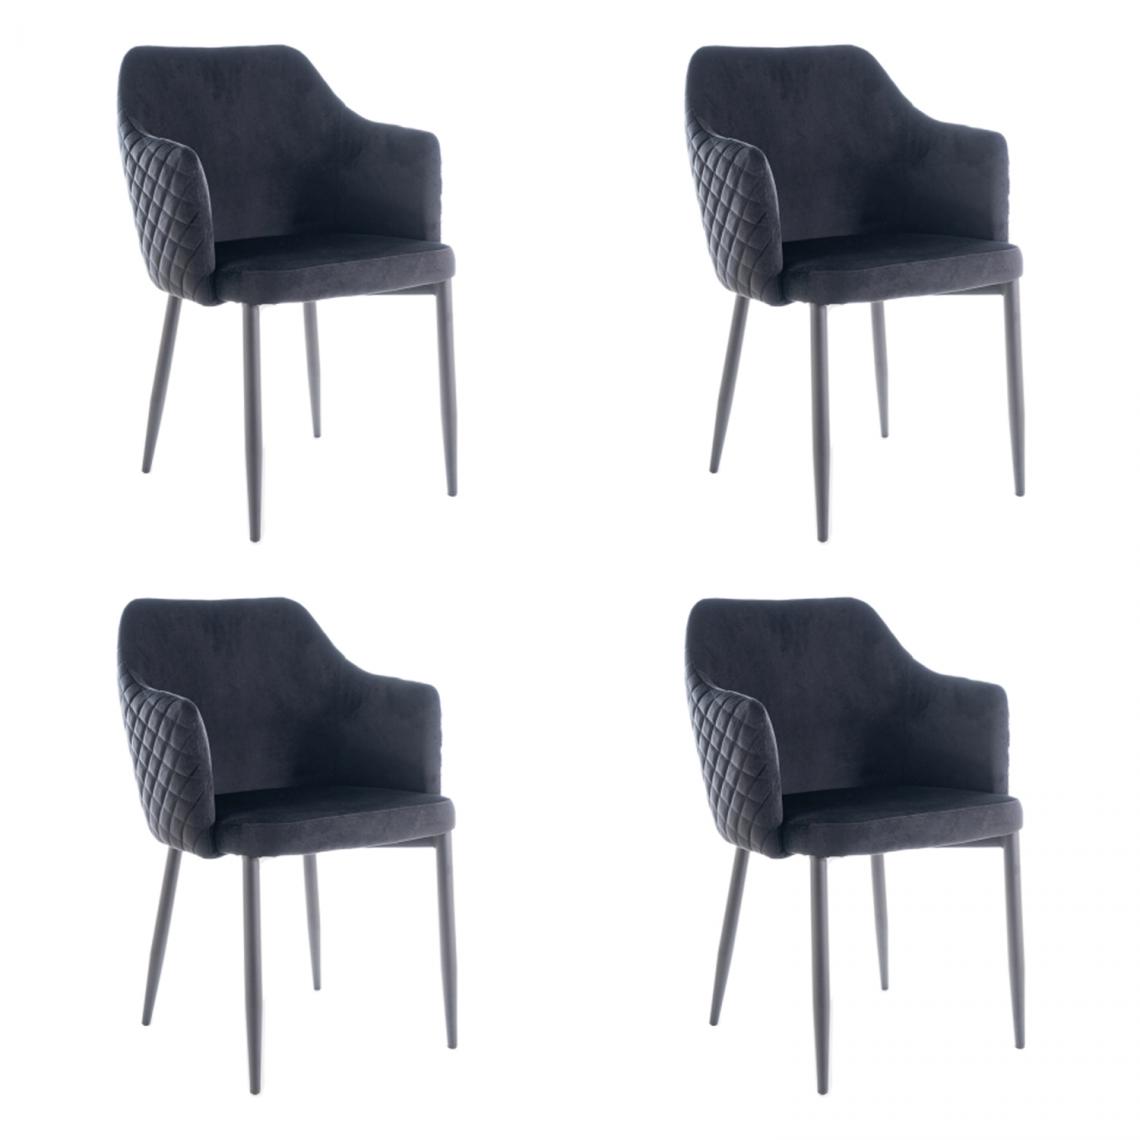 Hucoco - ASTOP - Lot de 4 chaise style glamour - 84x46x46 cm - Revêtement en tissu velouté - Chaise élégante - Noir - Chaises